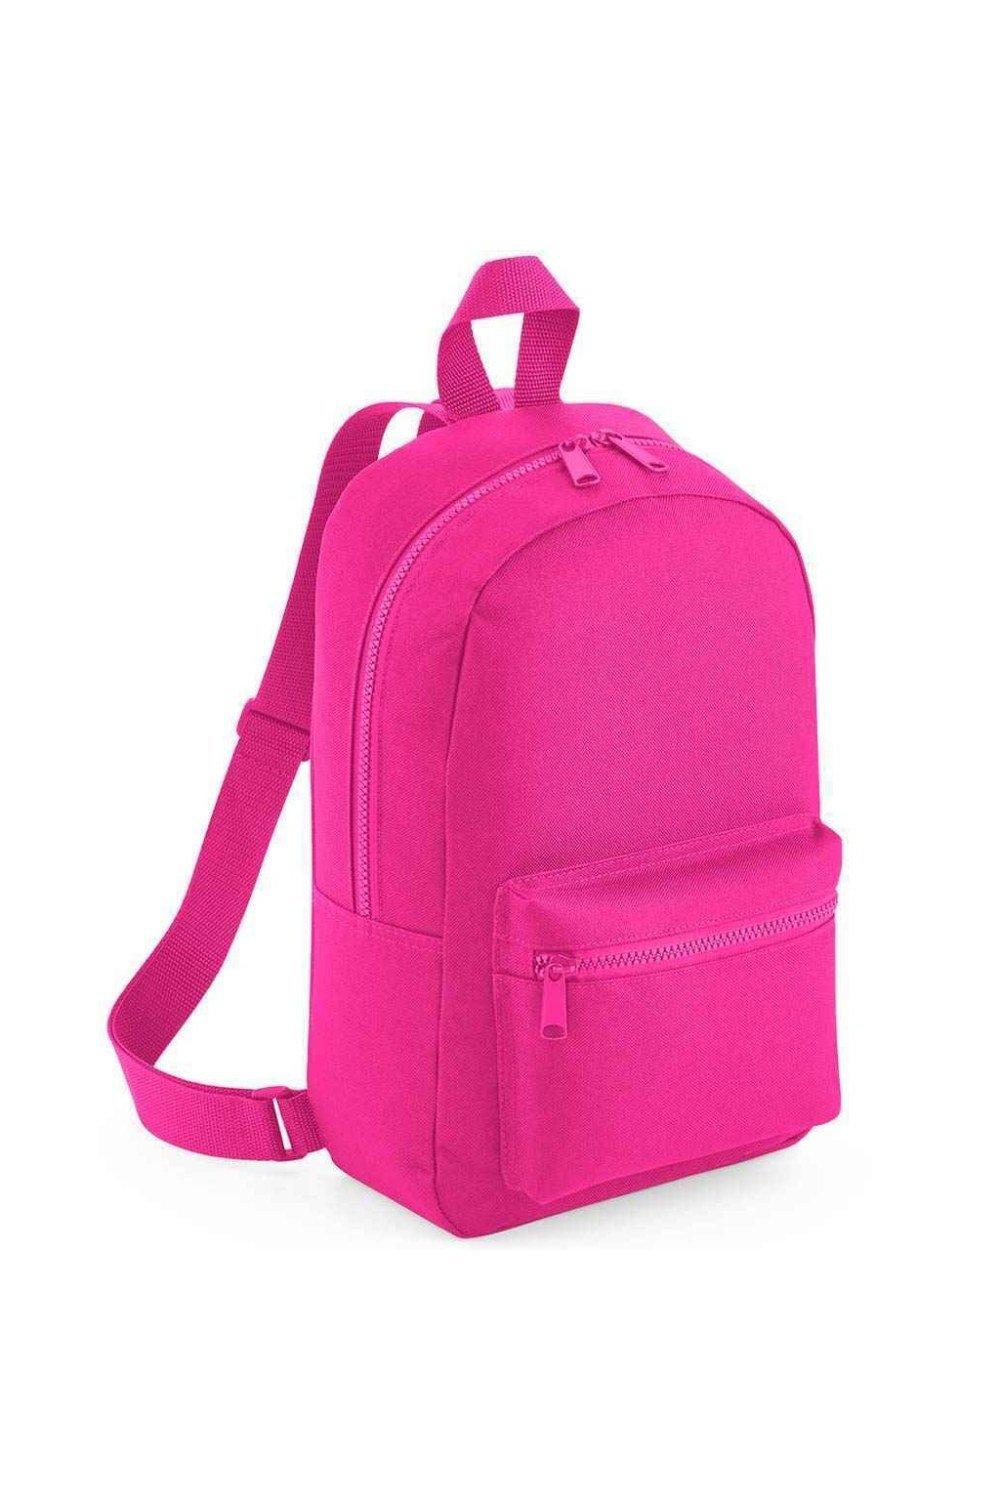 Мини-рюкзак Essential Fashion Bagbase, розовый